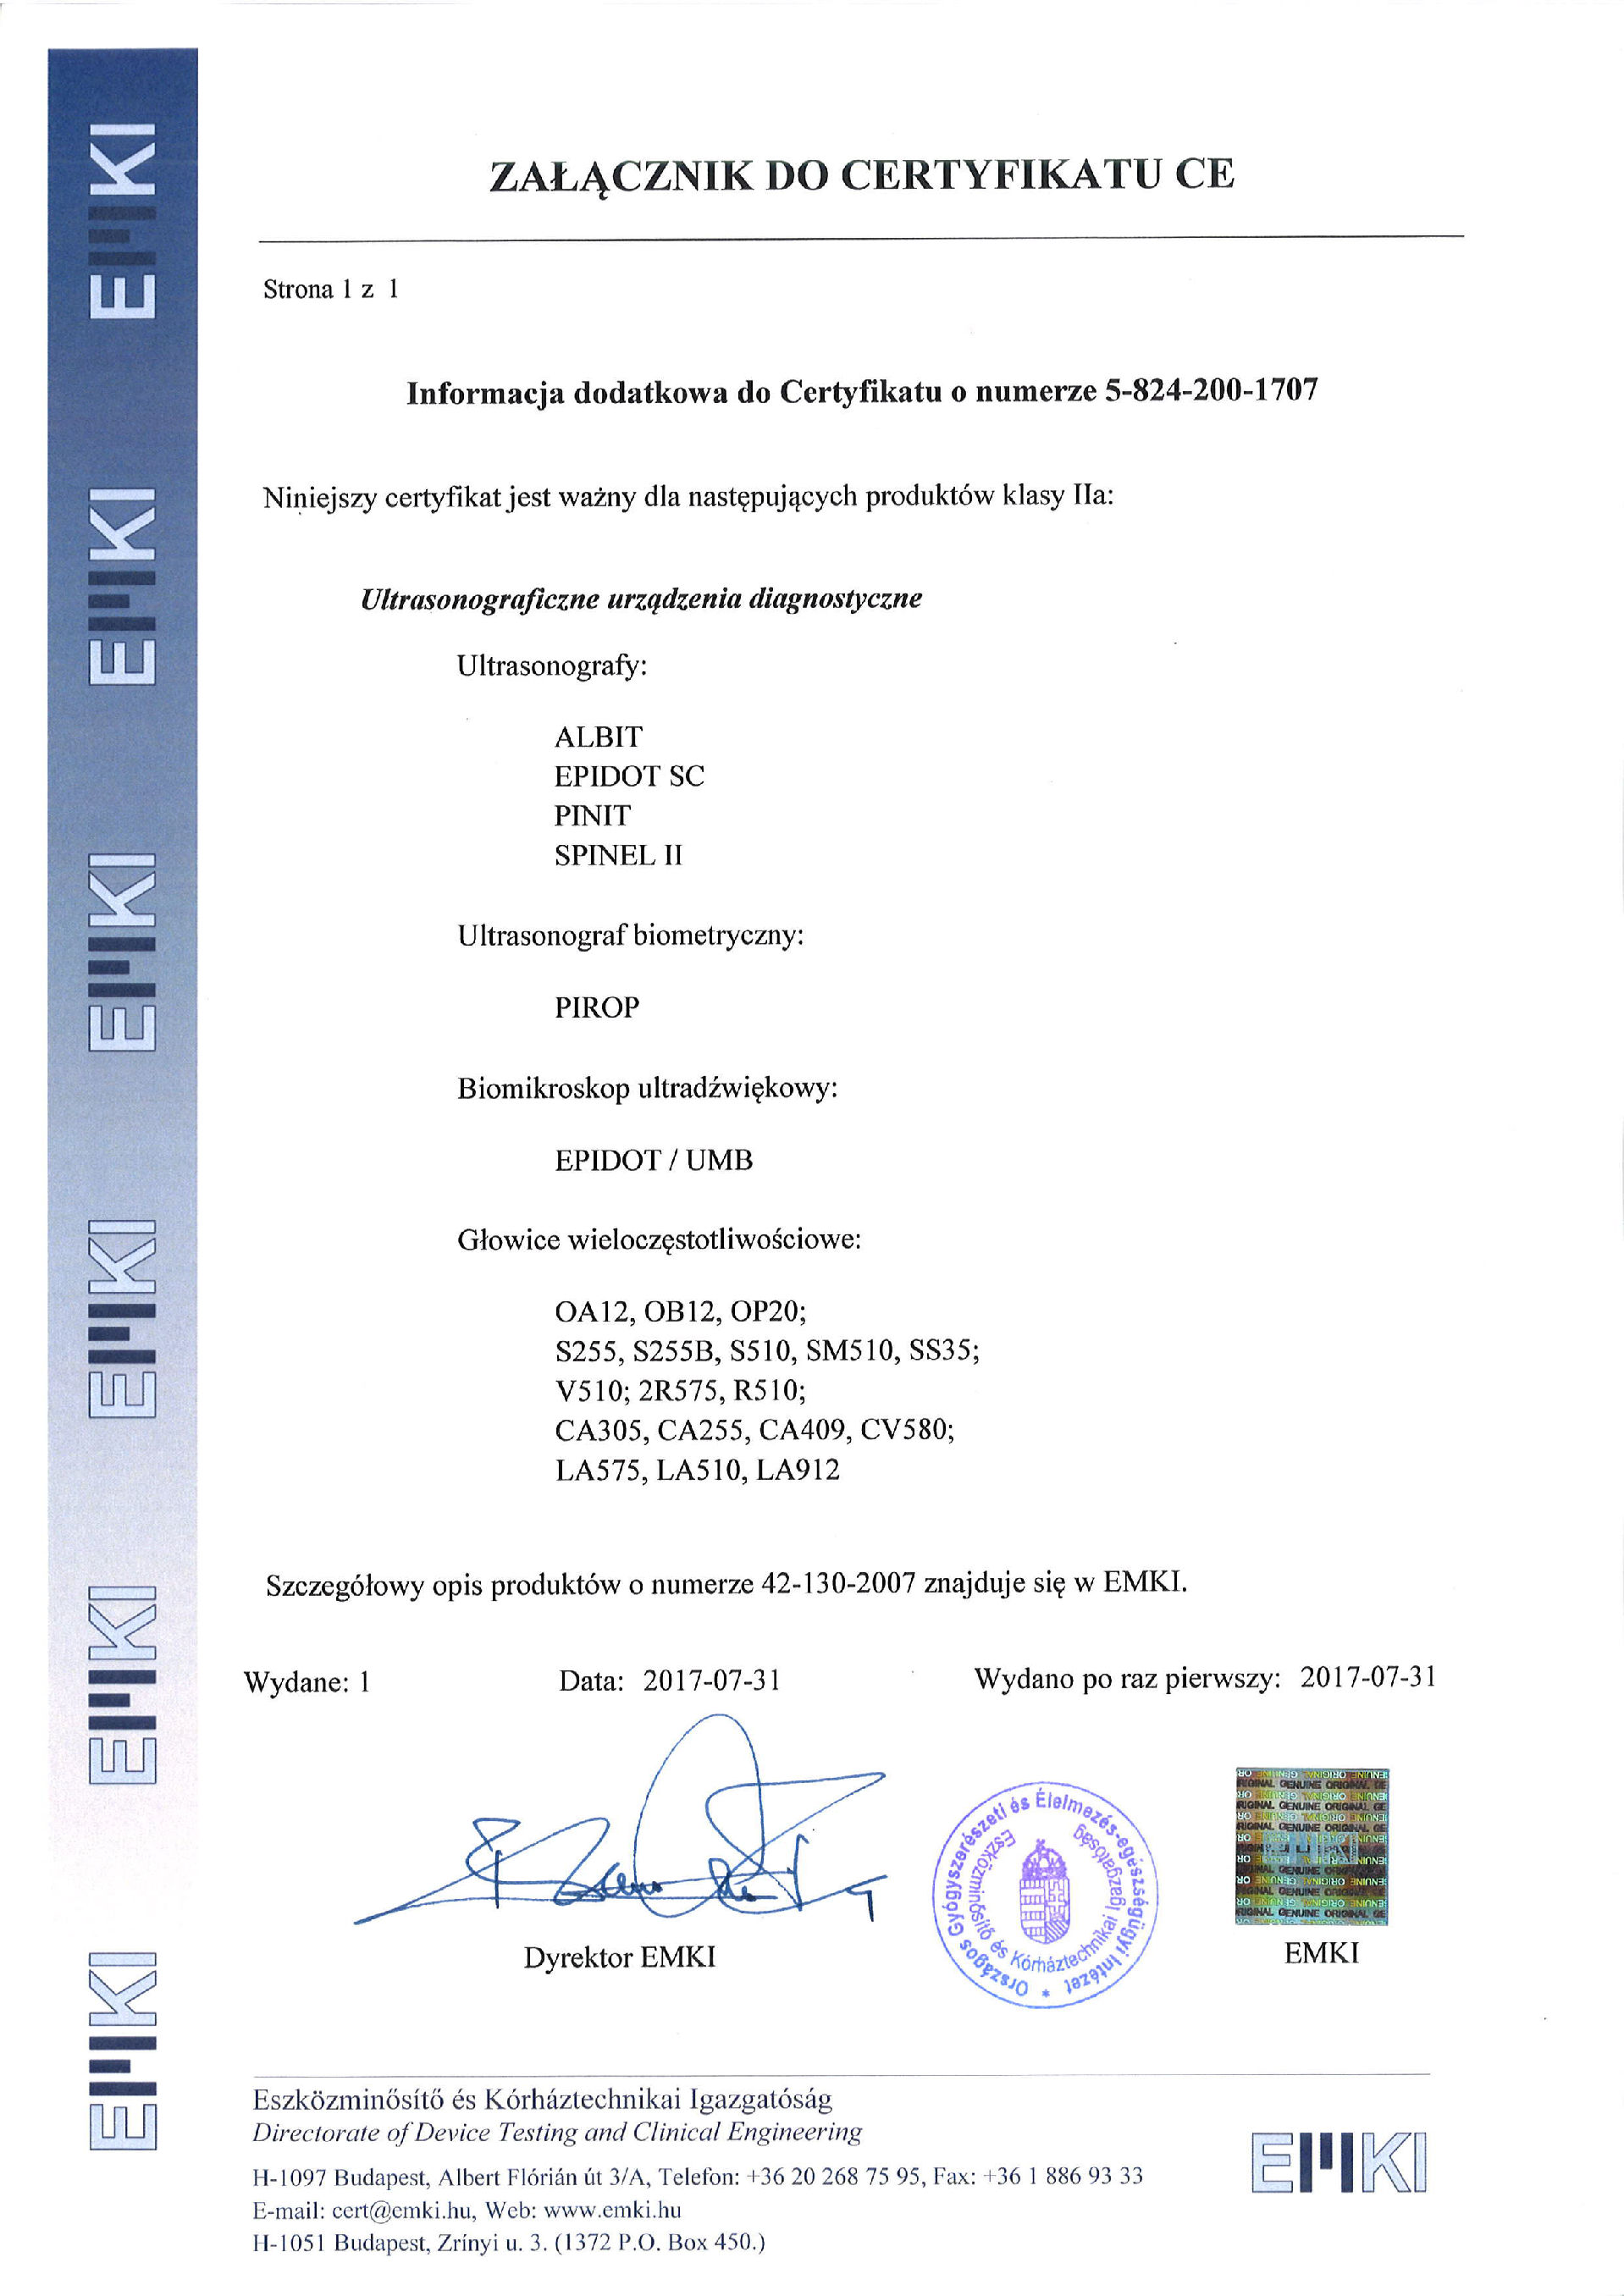 Załącznik do Certyfikatu CE